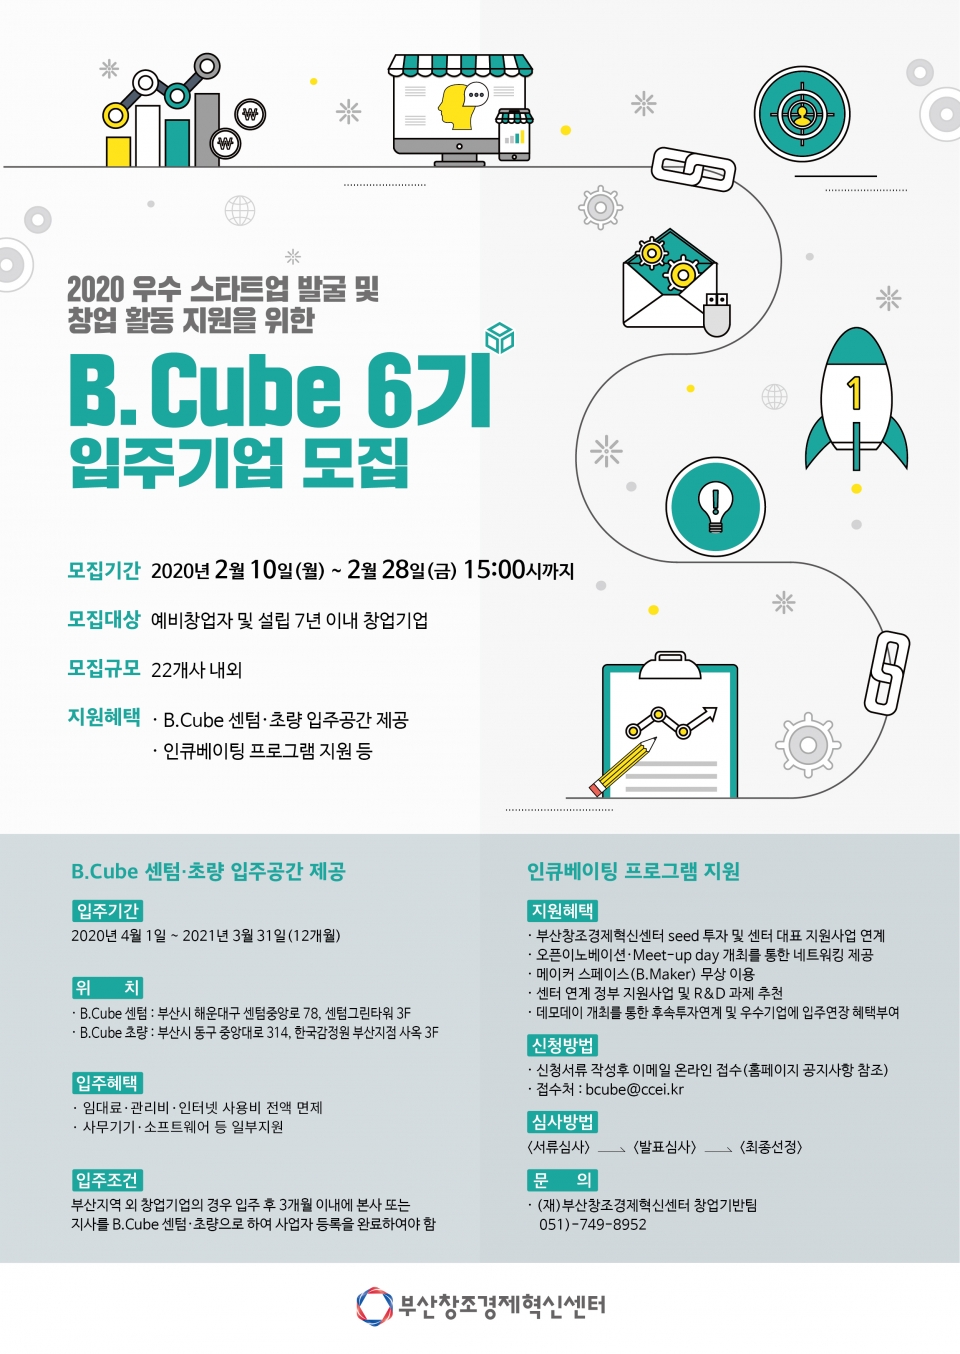 'B.Cube 센텀점 및 초량점' 입주 기업 모집 포스터. (출처: 부산창조경제혁신센터)